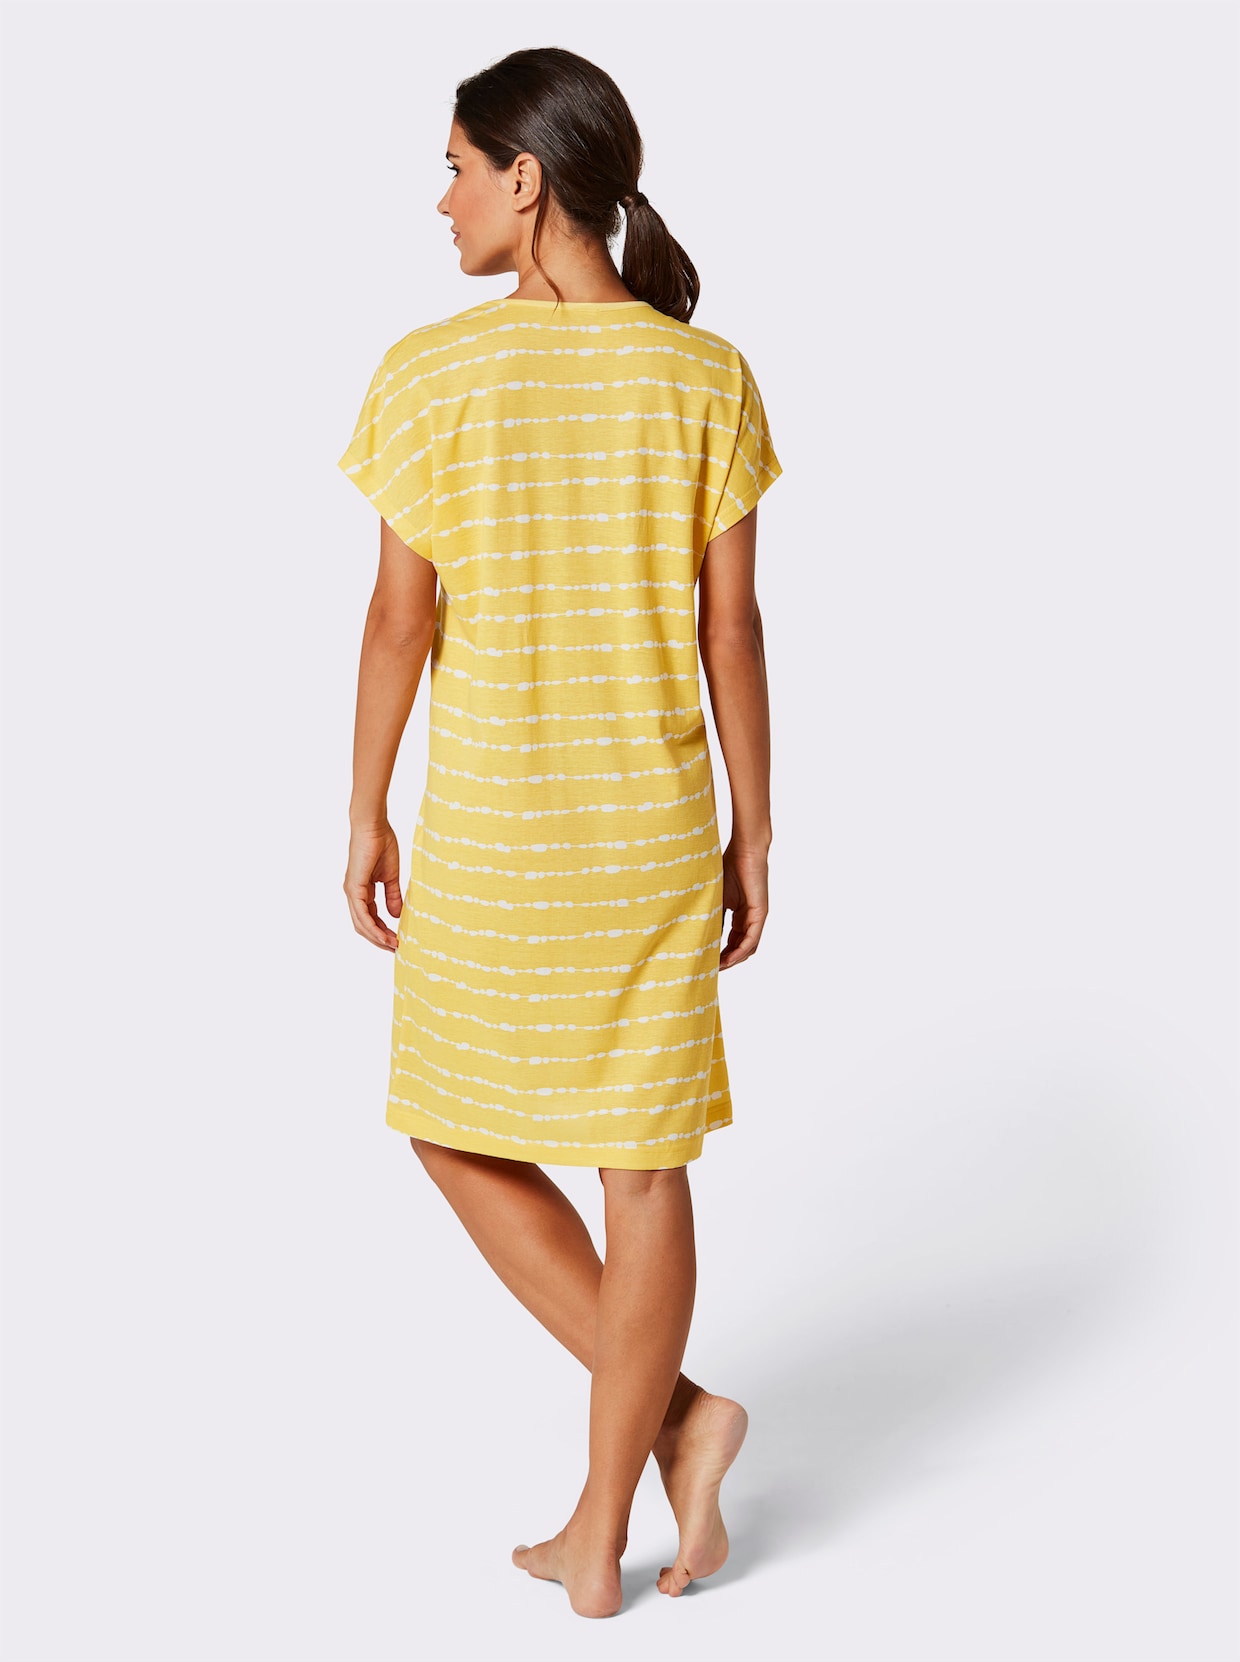 wäschepur Sleepshirts - marine-weiß-gestreift + gelb-weiß-gestreift